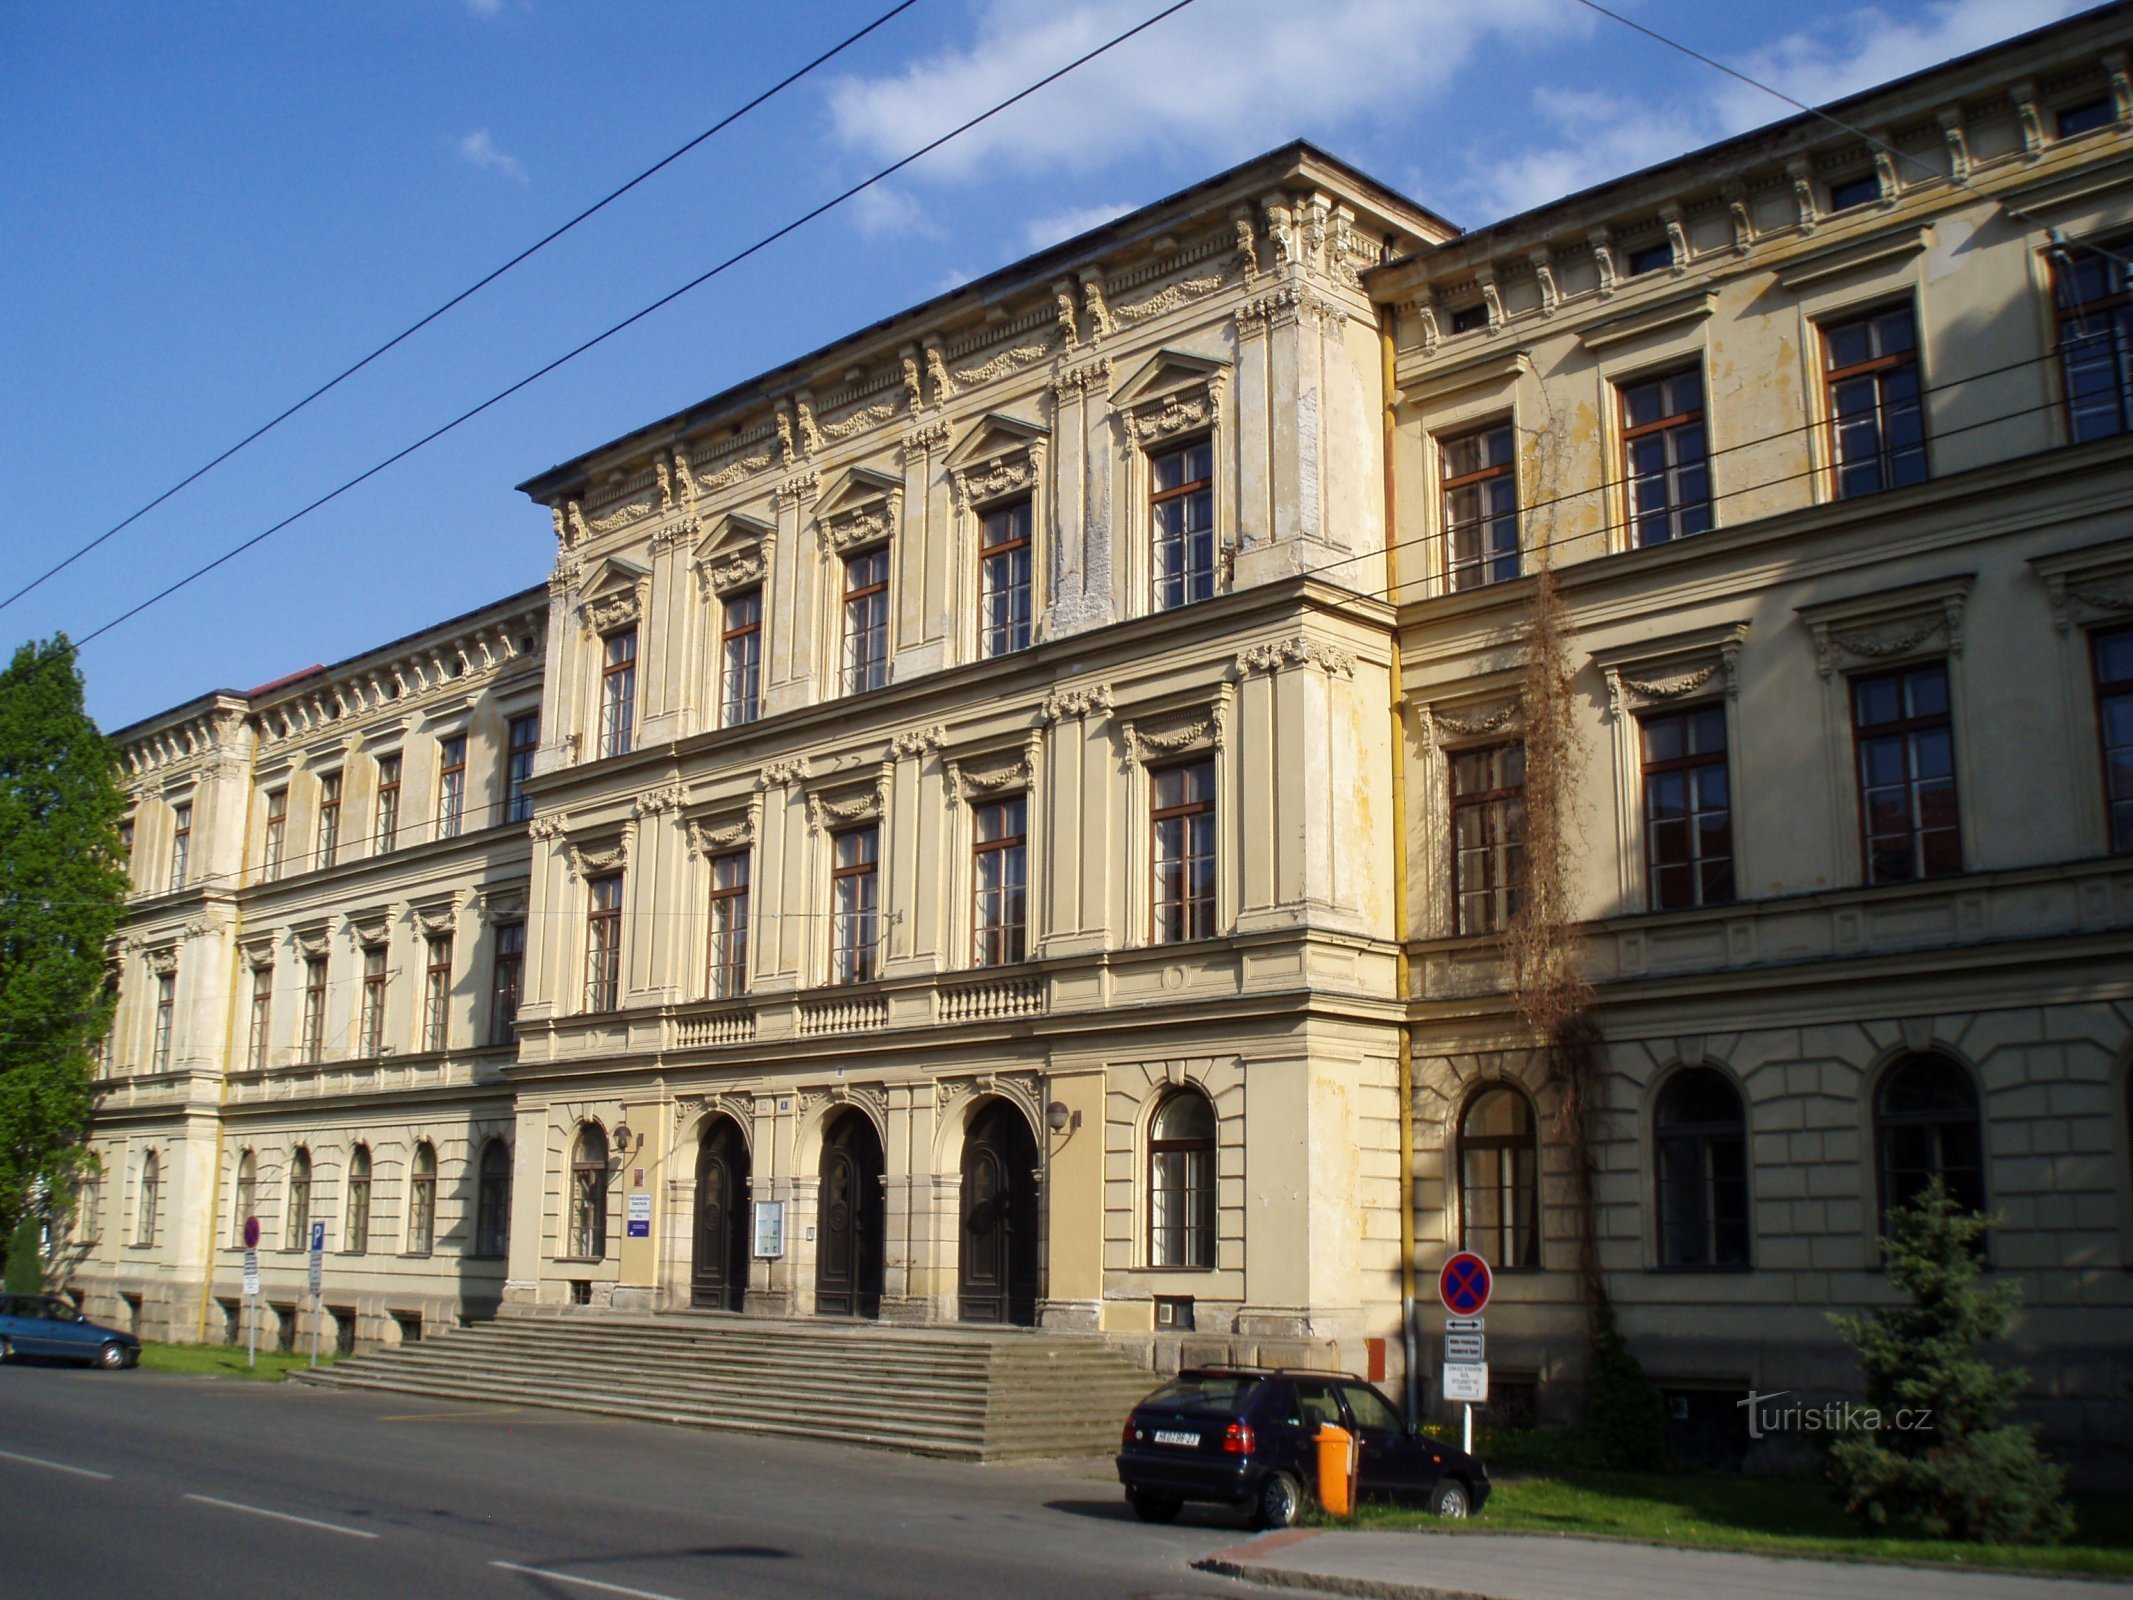 Trường Y khoa Cao cấp và Trường Y tế Trung học (Hradec Králové, ngày 9.5.2011 tháng XNUMX năm XNUMX)